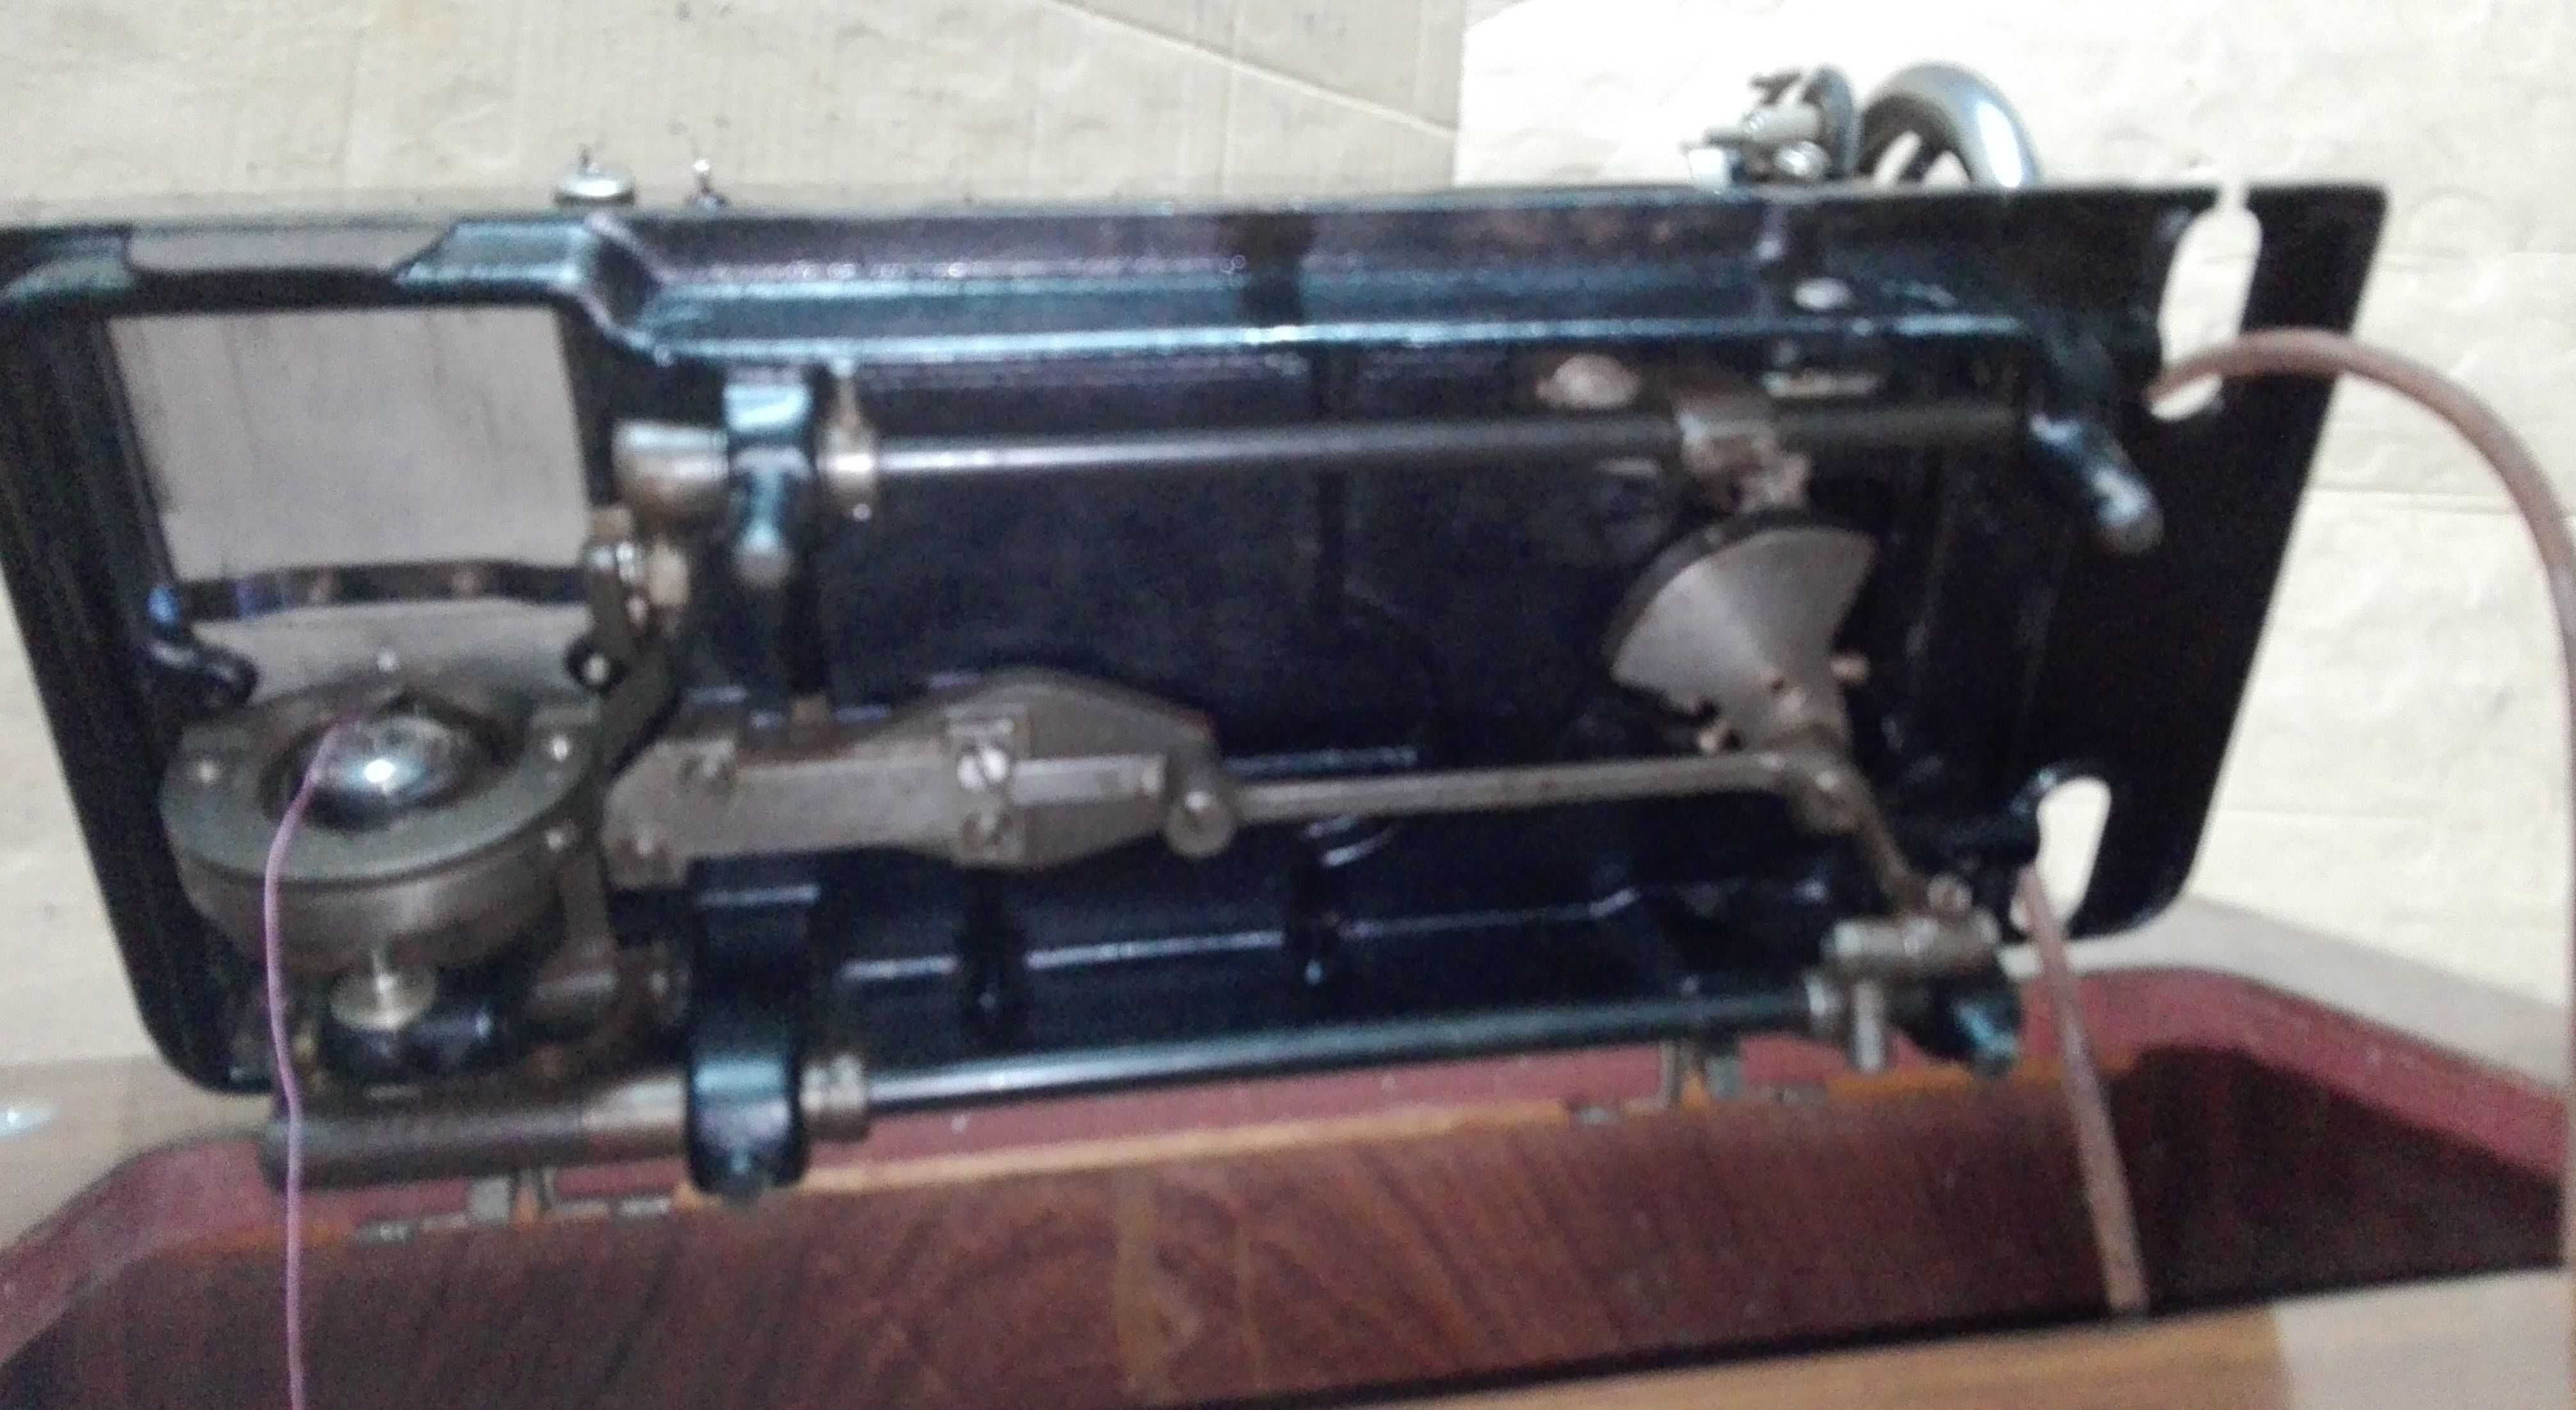 Máquina costura OLIVA (vintage)